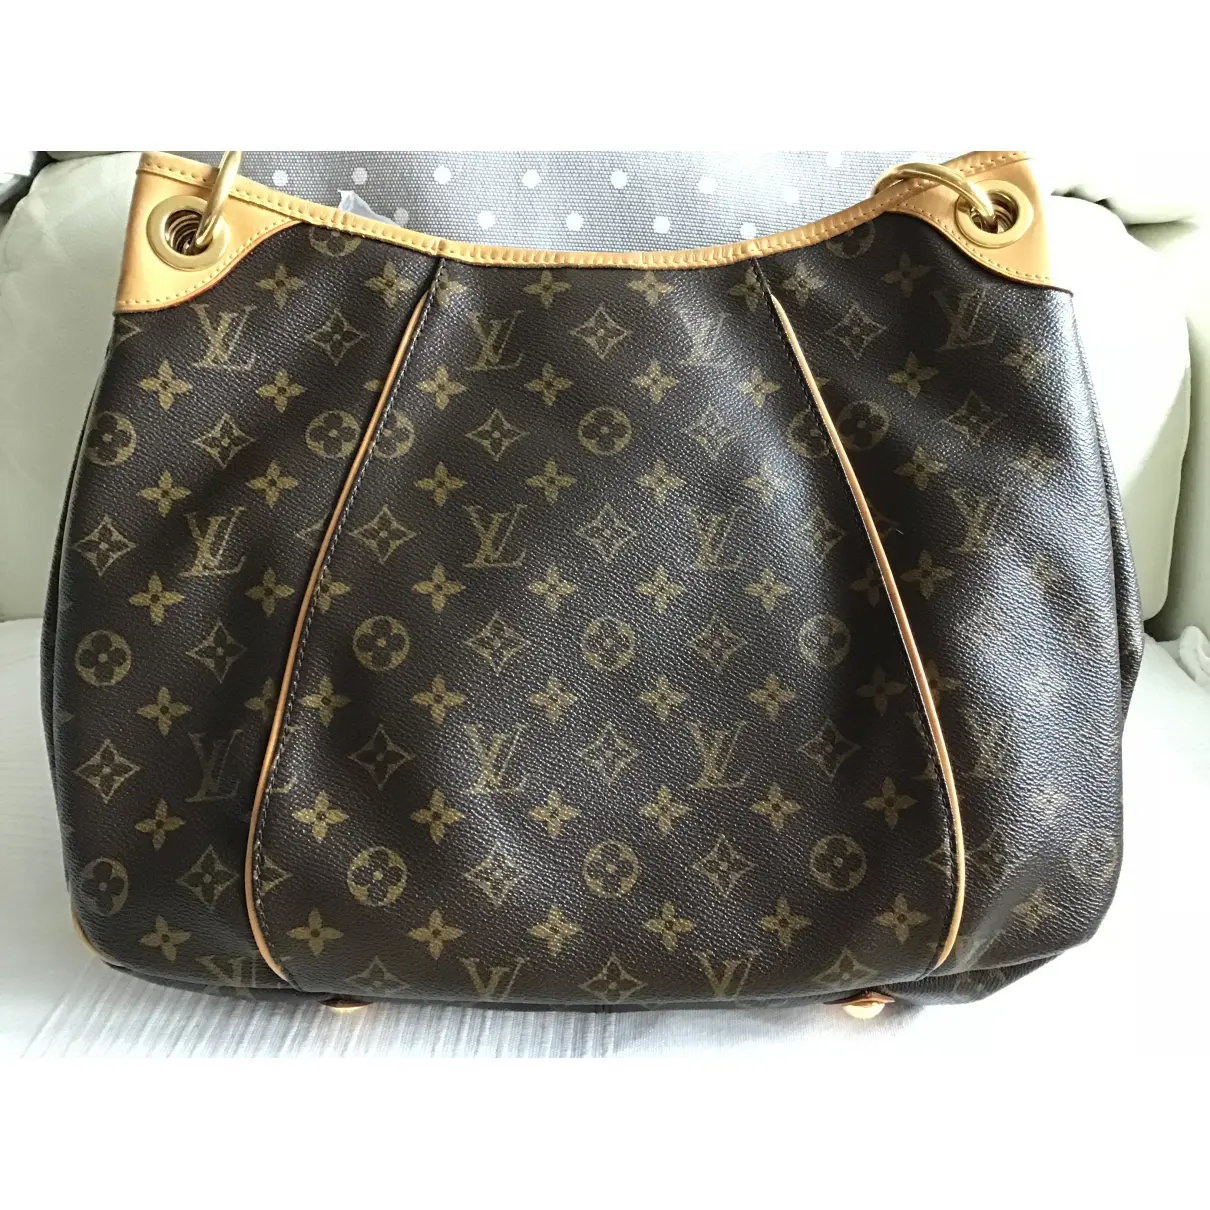 Buy Louis Vuitton Galliera cloth handbag online